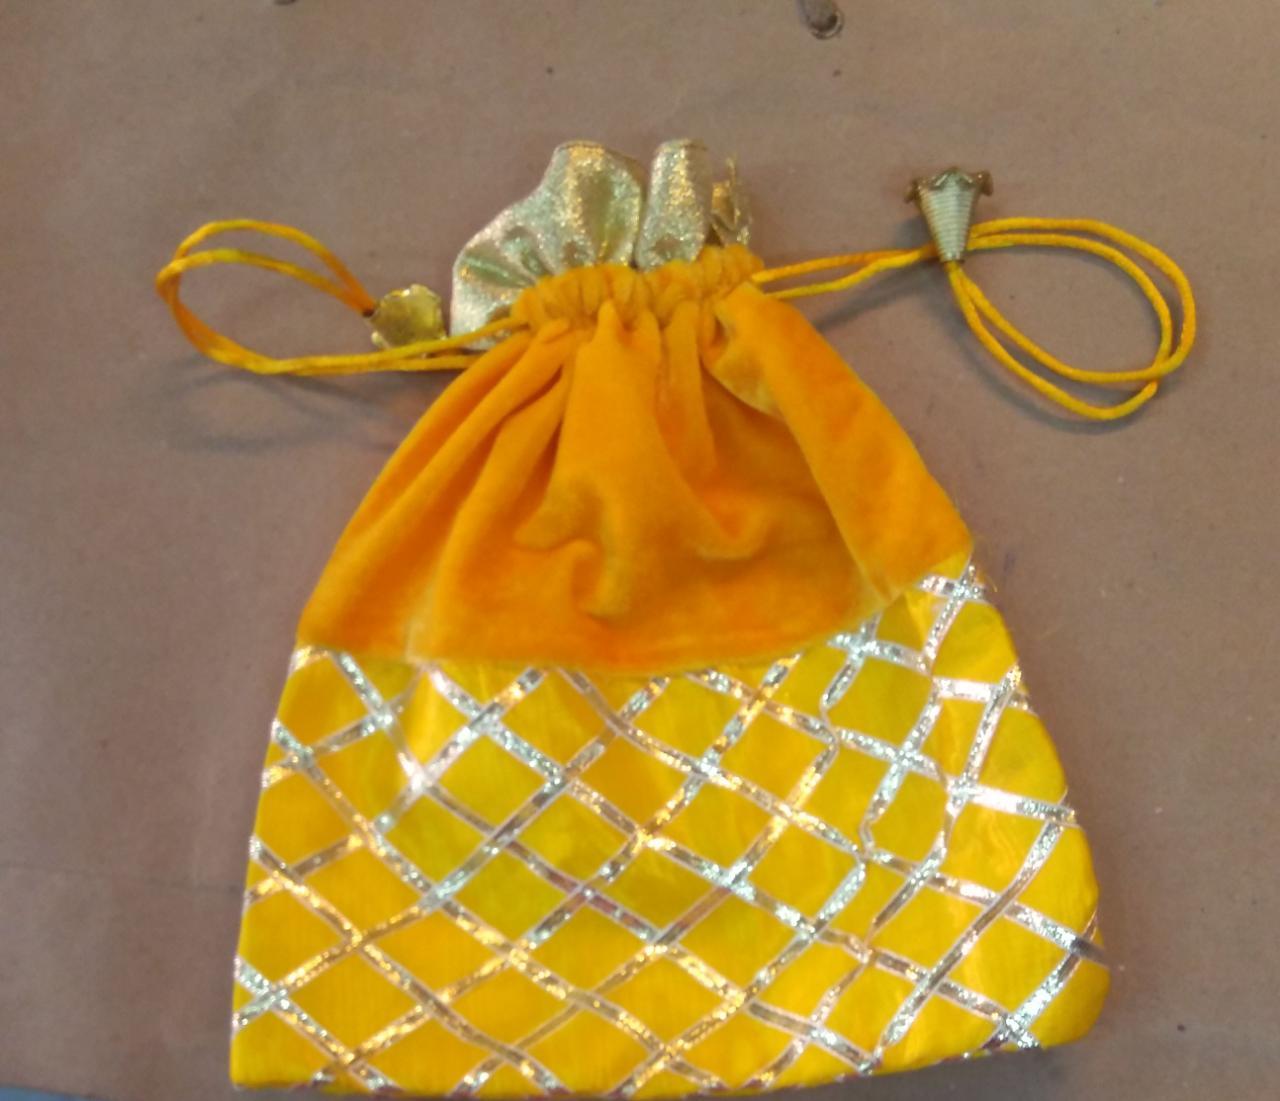 LAMANSH ® Women's Potli Bag Pack of 150 LAMANSH Pack of 150 (4*6 inch)Women's Potli Bag For gifting / organza party favour gift bags  /Potli Bag for women with Printed